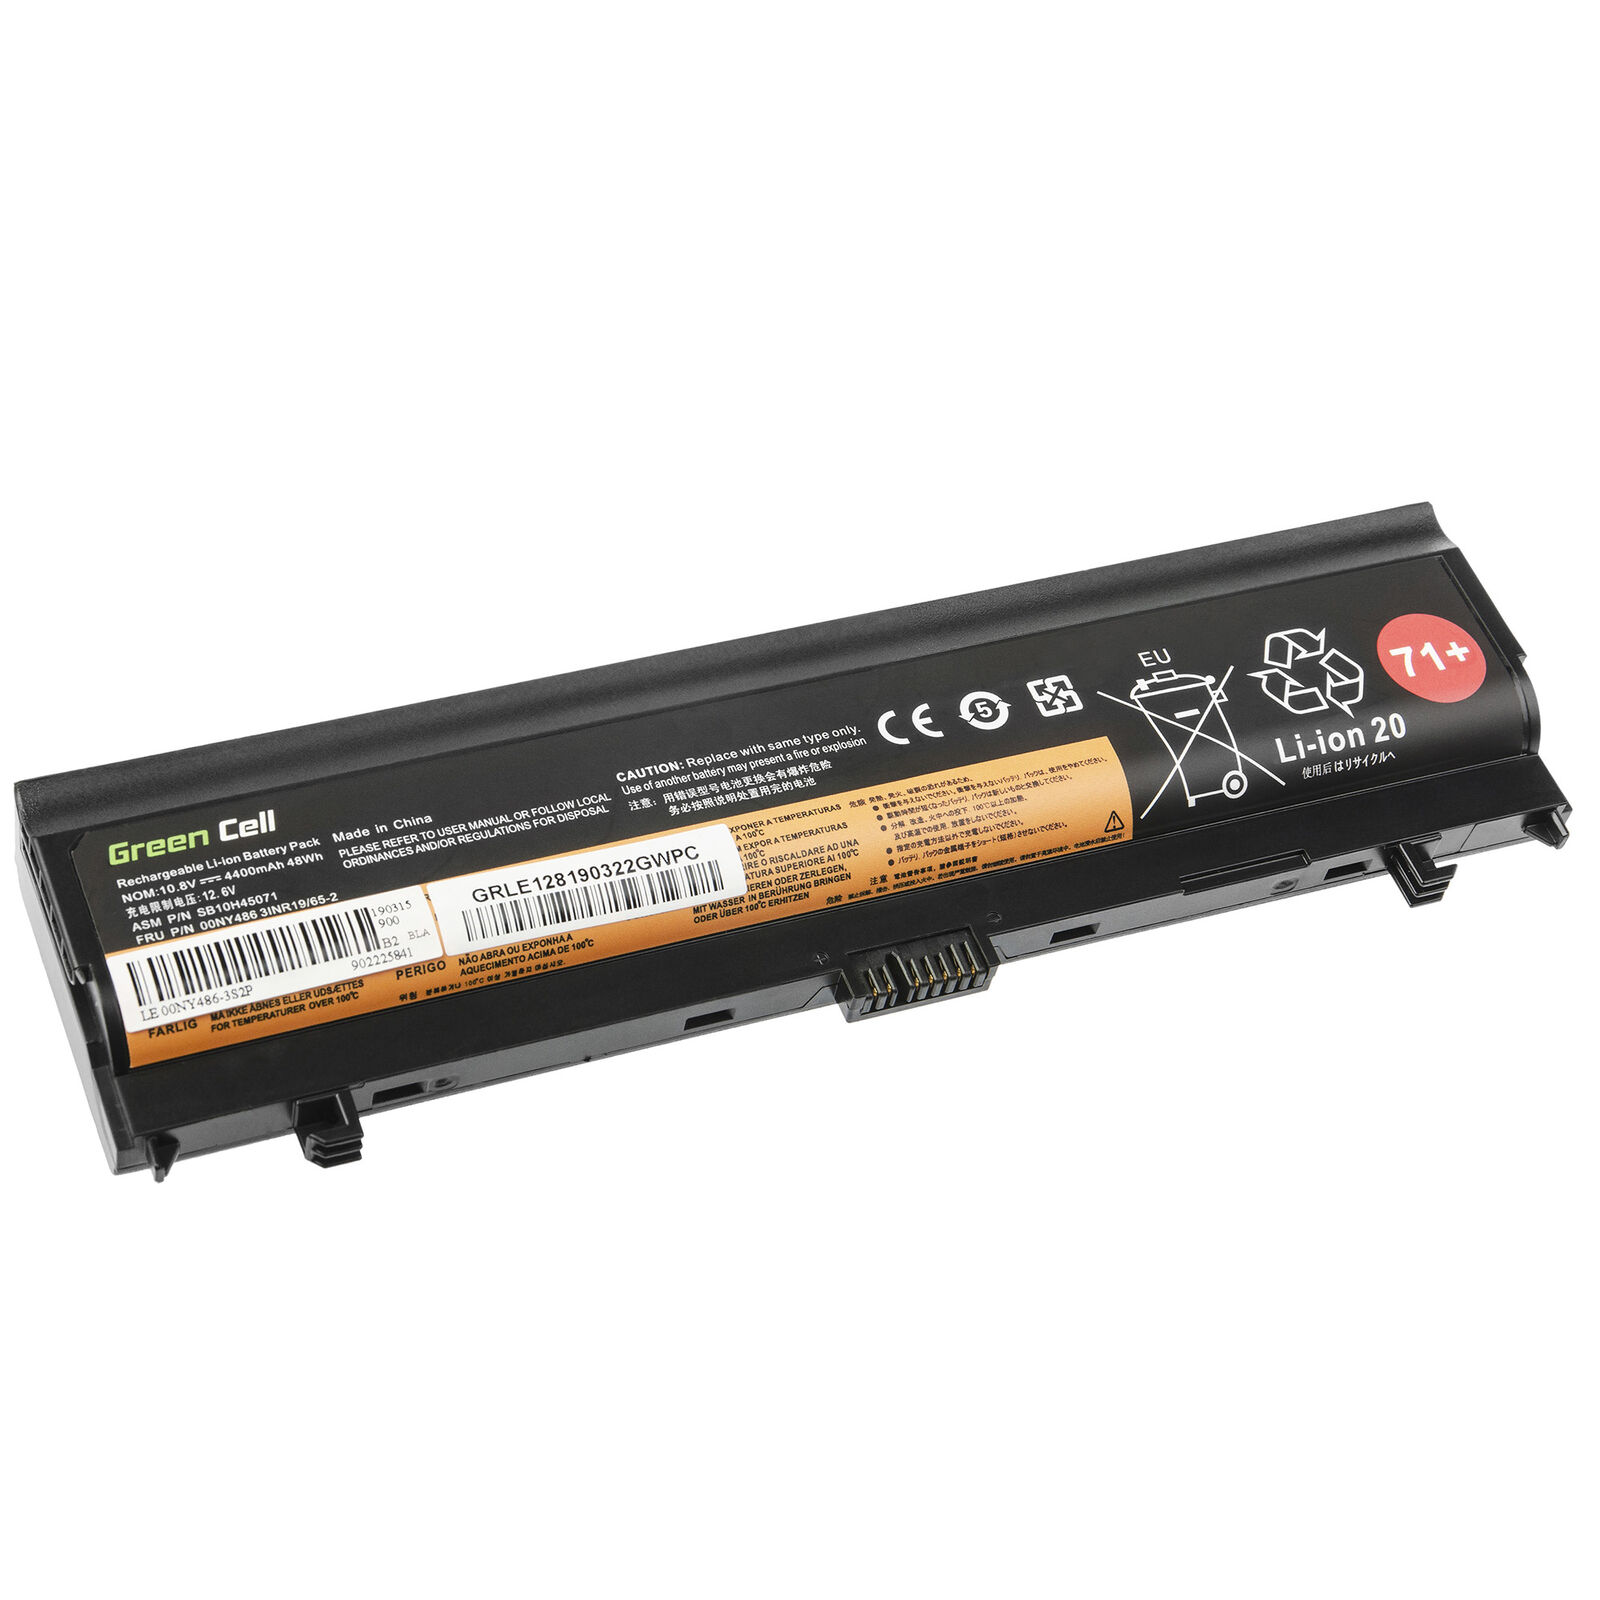 Batterie pour Lenovo ThinkPad L560 L570 00NY486 00NY487 00NY488 00NY489 4400mAh(compatible)